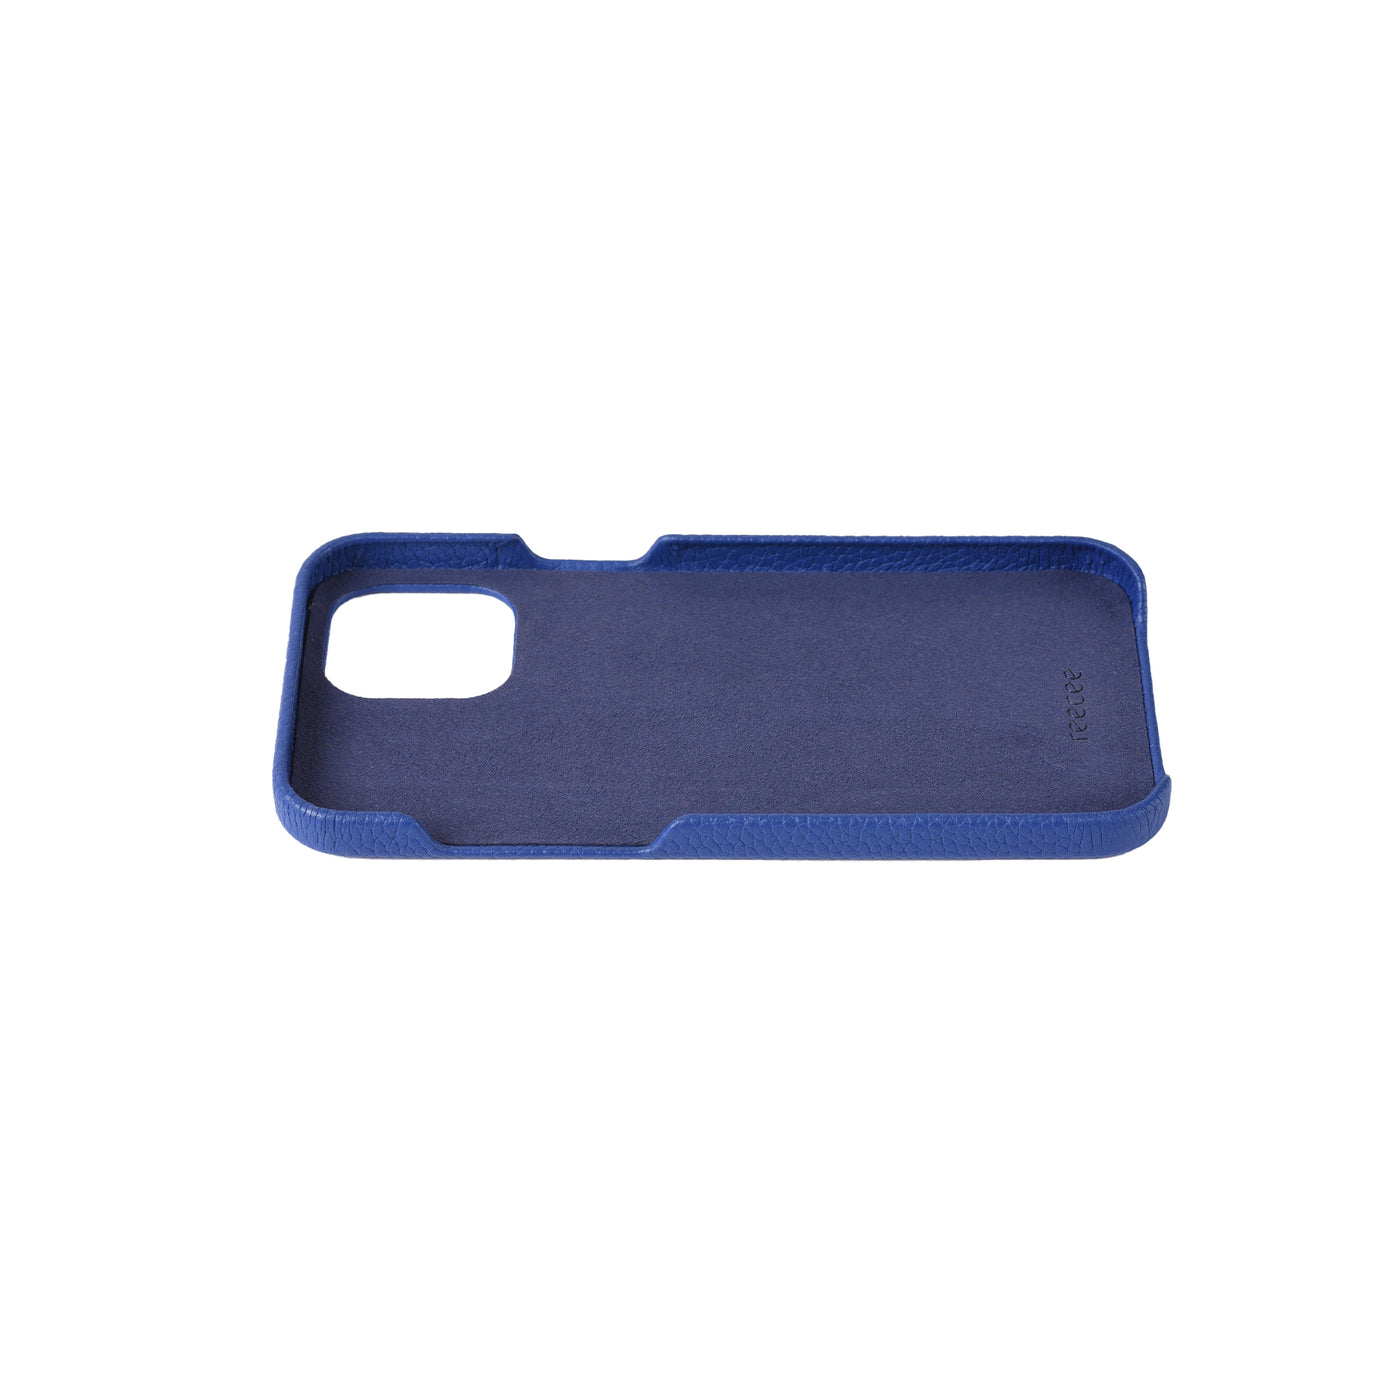 Blue Nile Phone Case - iPhone 13 Pro